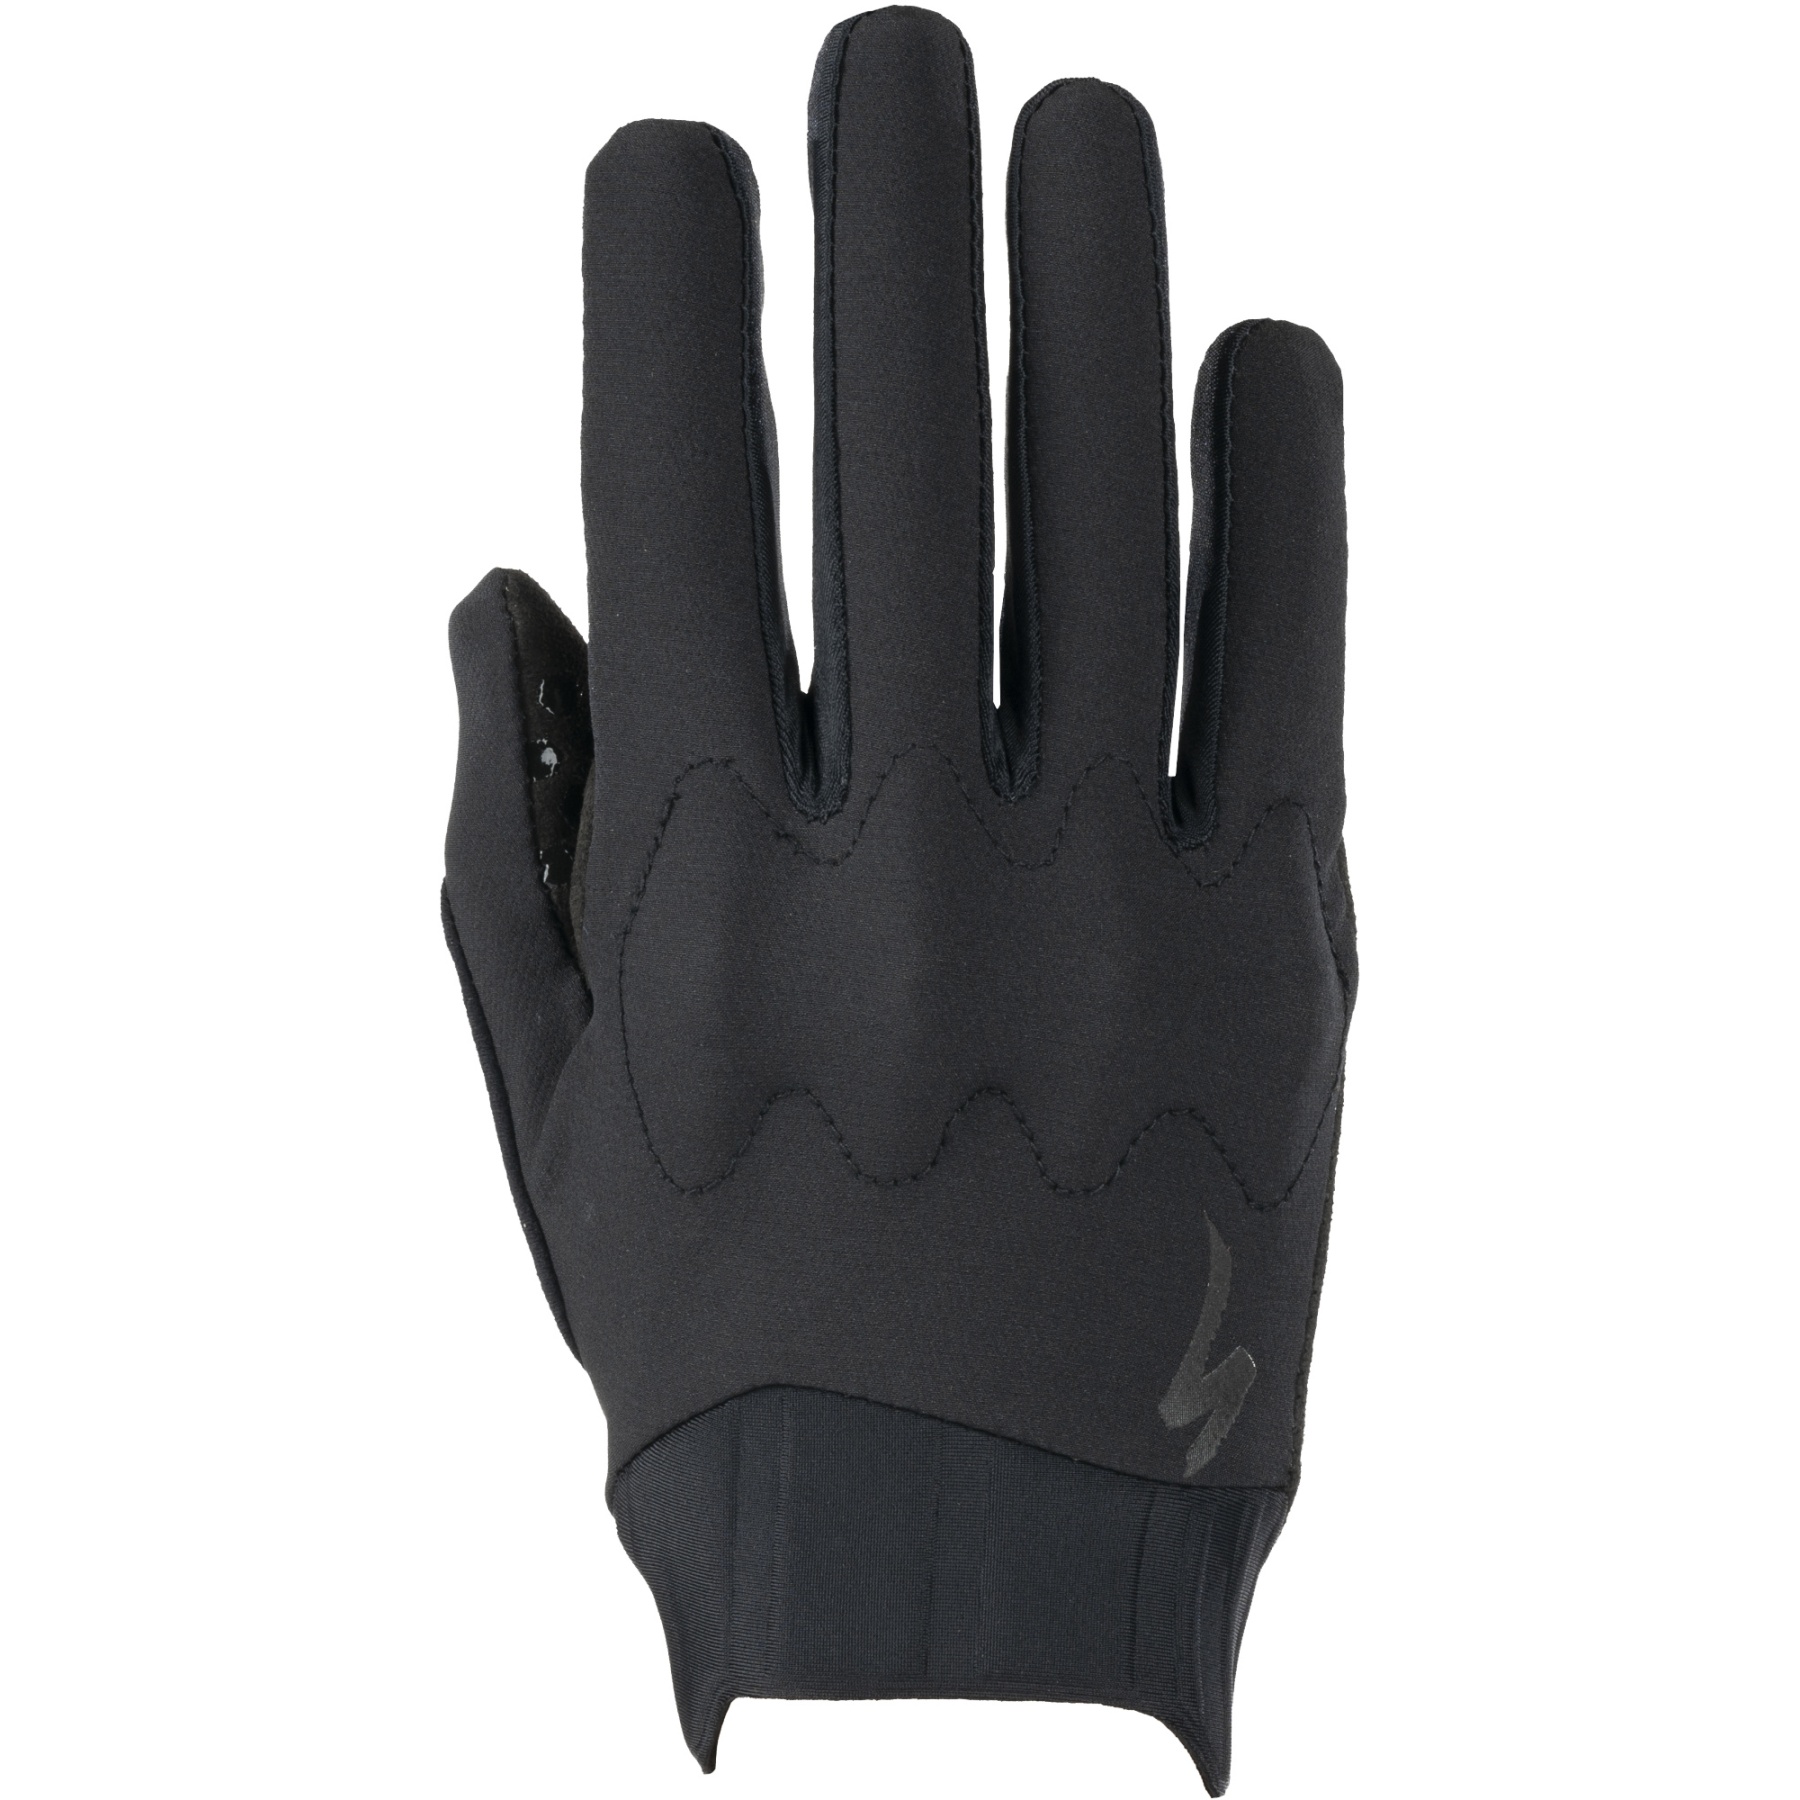 Produktbild von Specialized Trail D3O Vollfinger-Handschuhe - schwarz